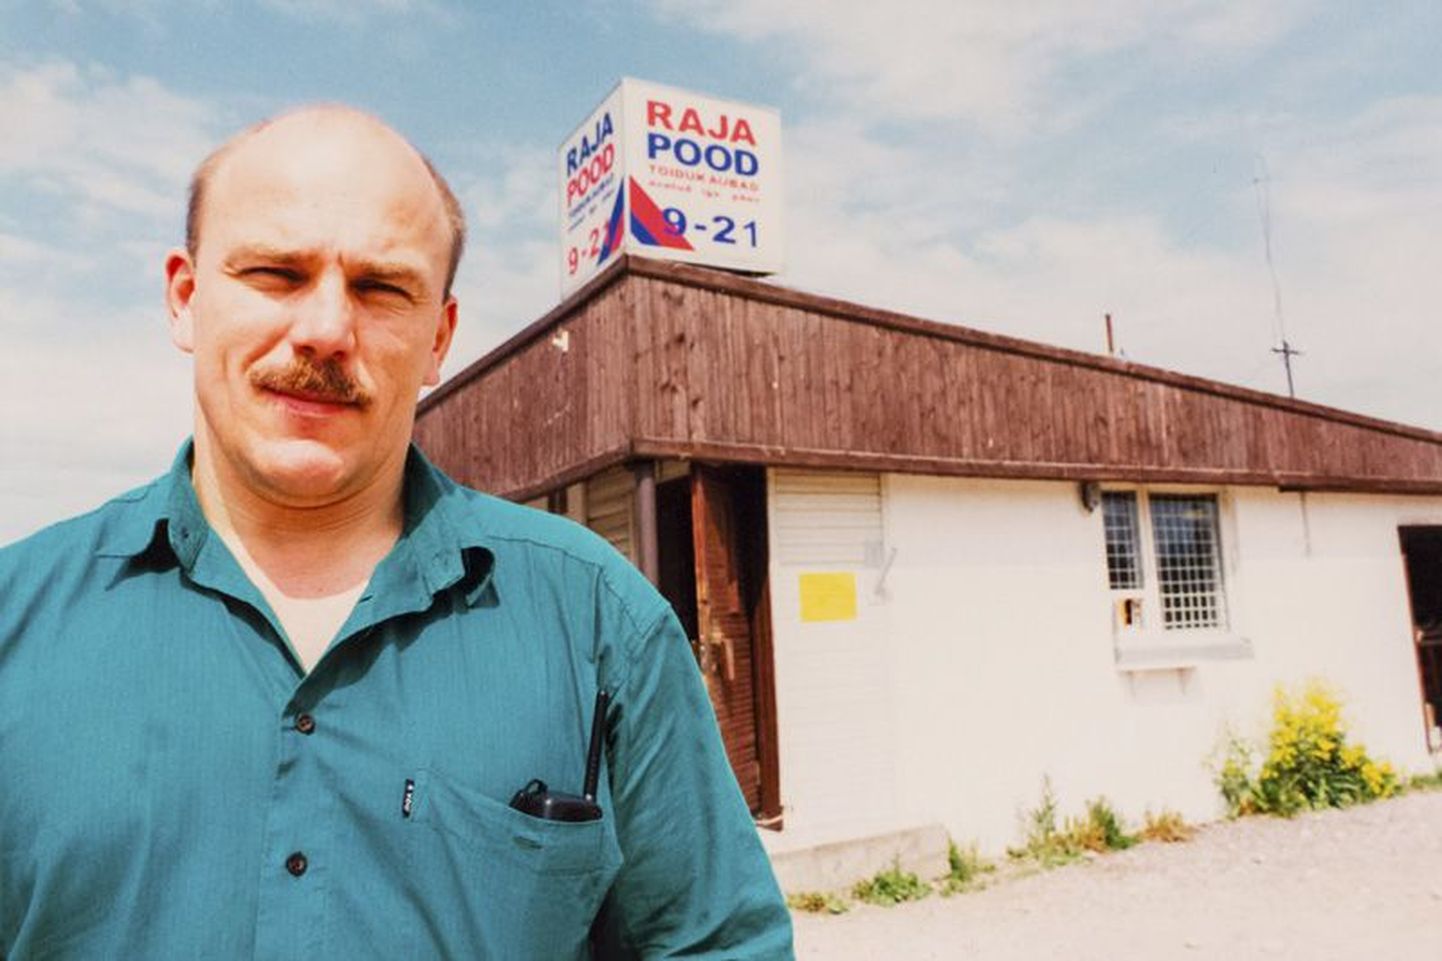 Oleg Grossi esimene kauplus oli 26. aprillil 1992 avatud Raja pood.